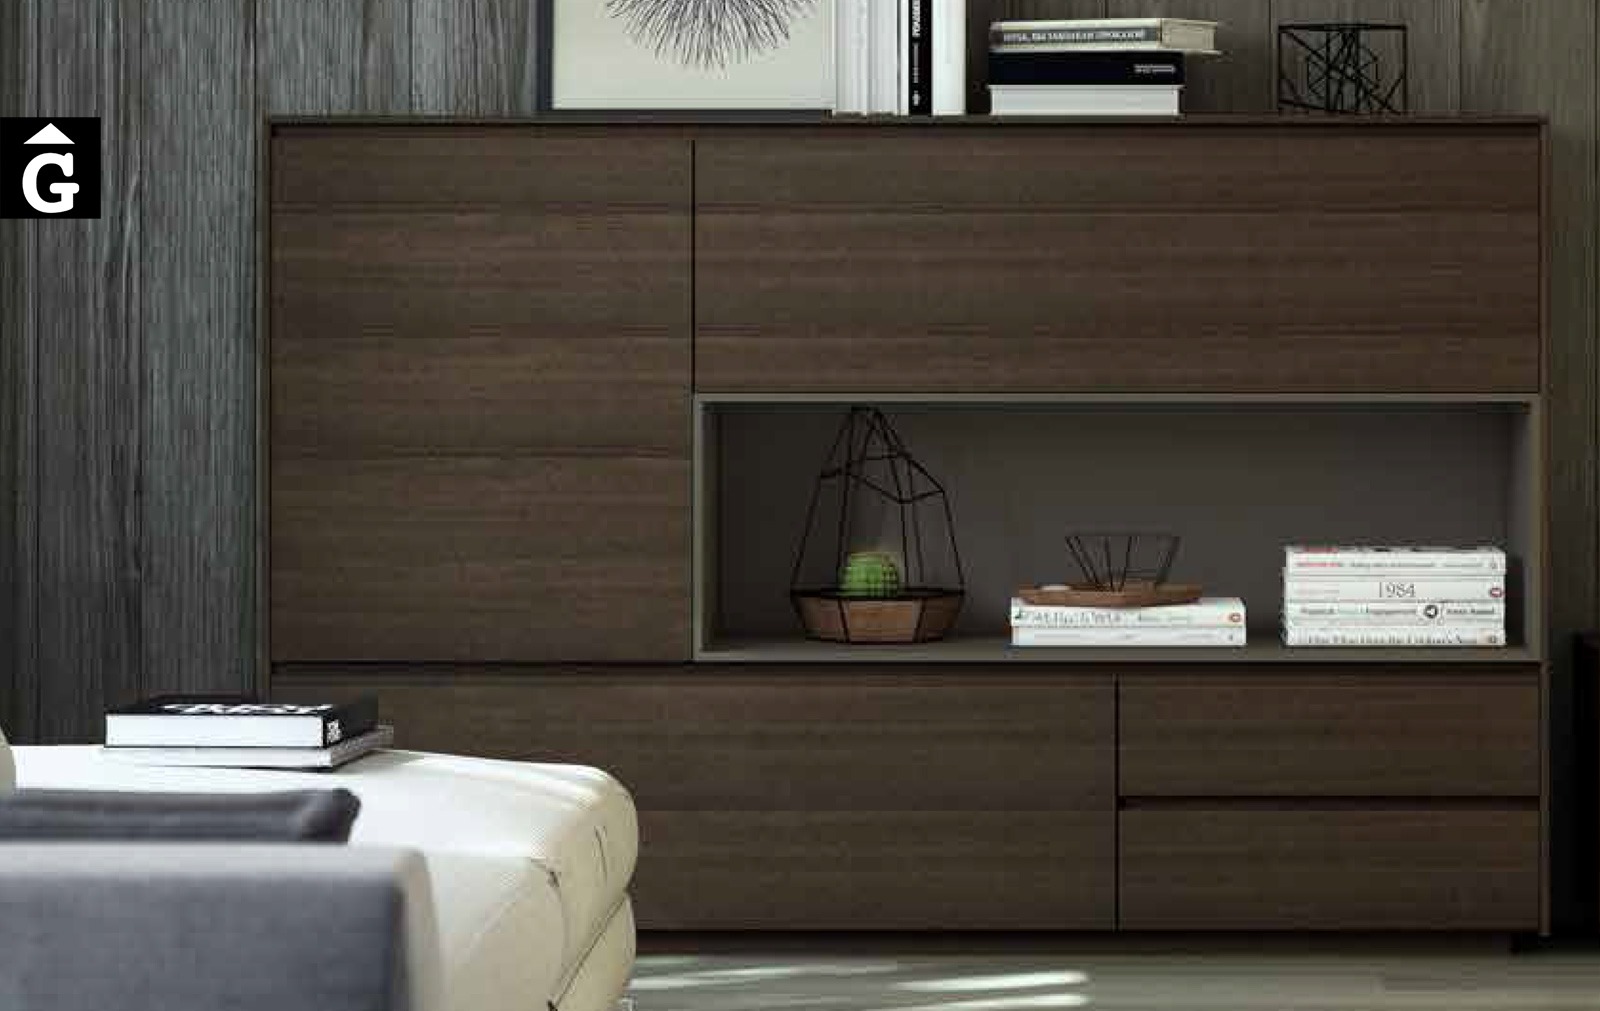 14 0 Area mobles Ciurans per mobles Gifreu programa modular disseny atemporal realitzat amb materials i ferratges de qualitat estil modern minimal